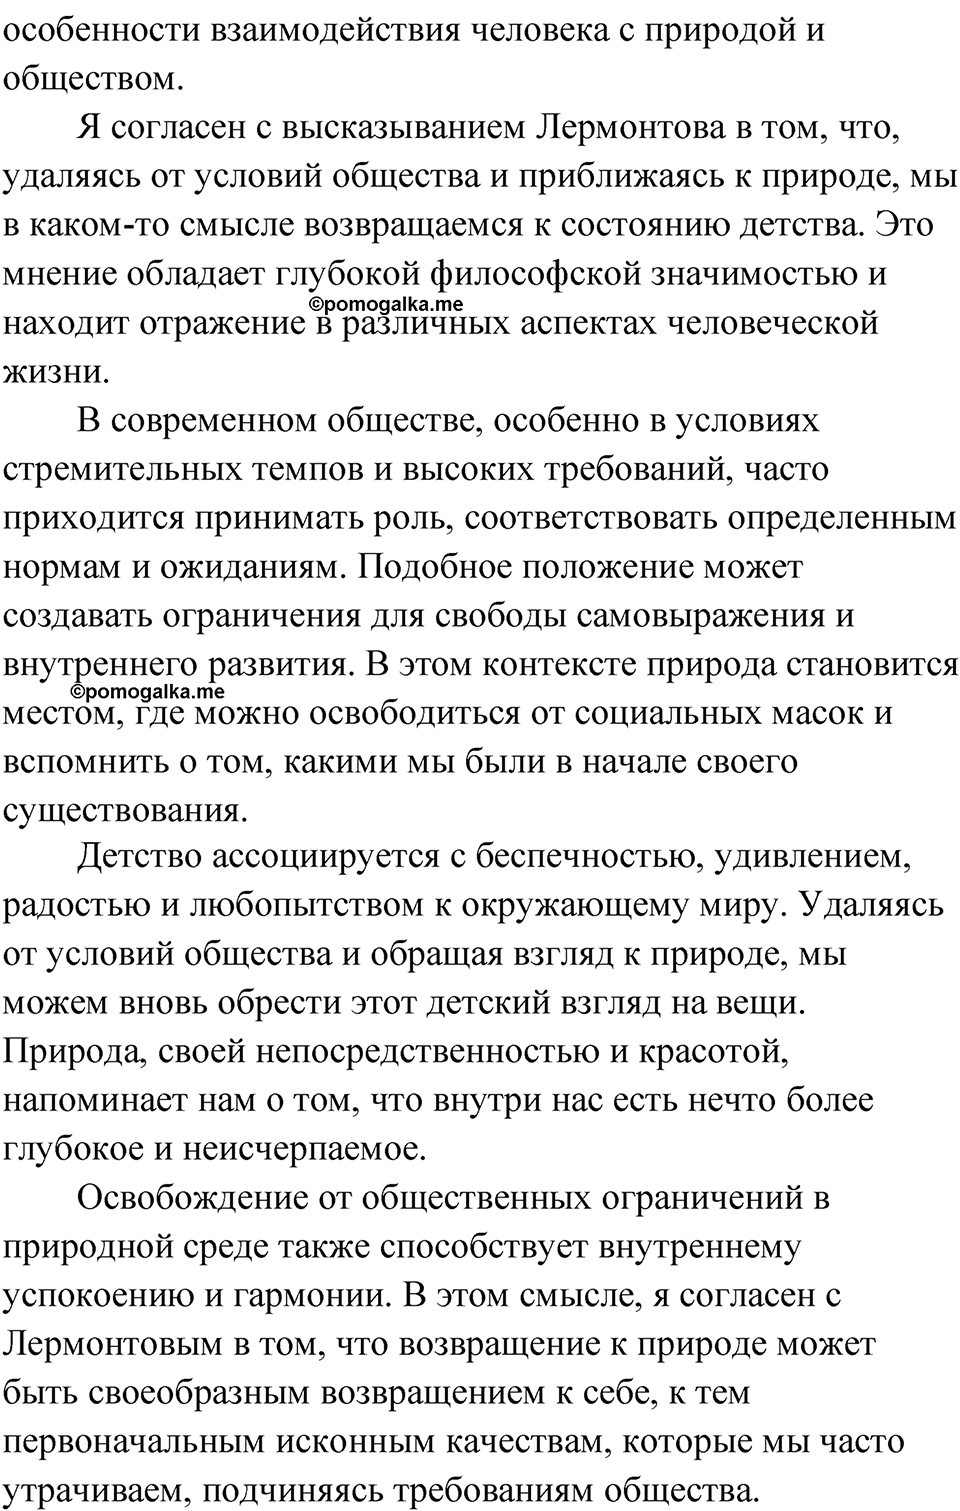 страница 232 упражнение 200 русский язык 9 класс Быстрова 1 часть 2022 год